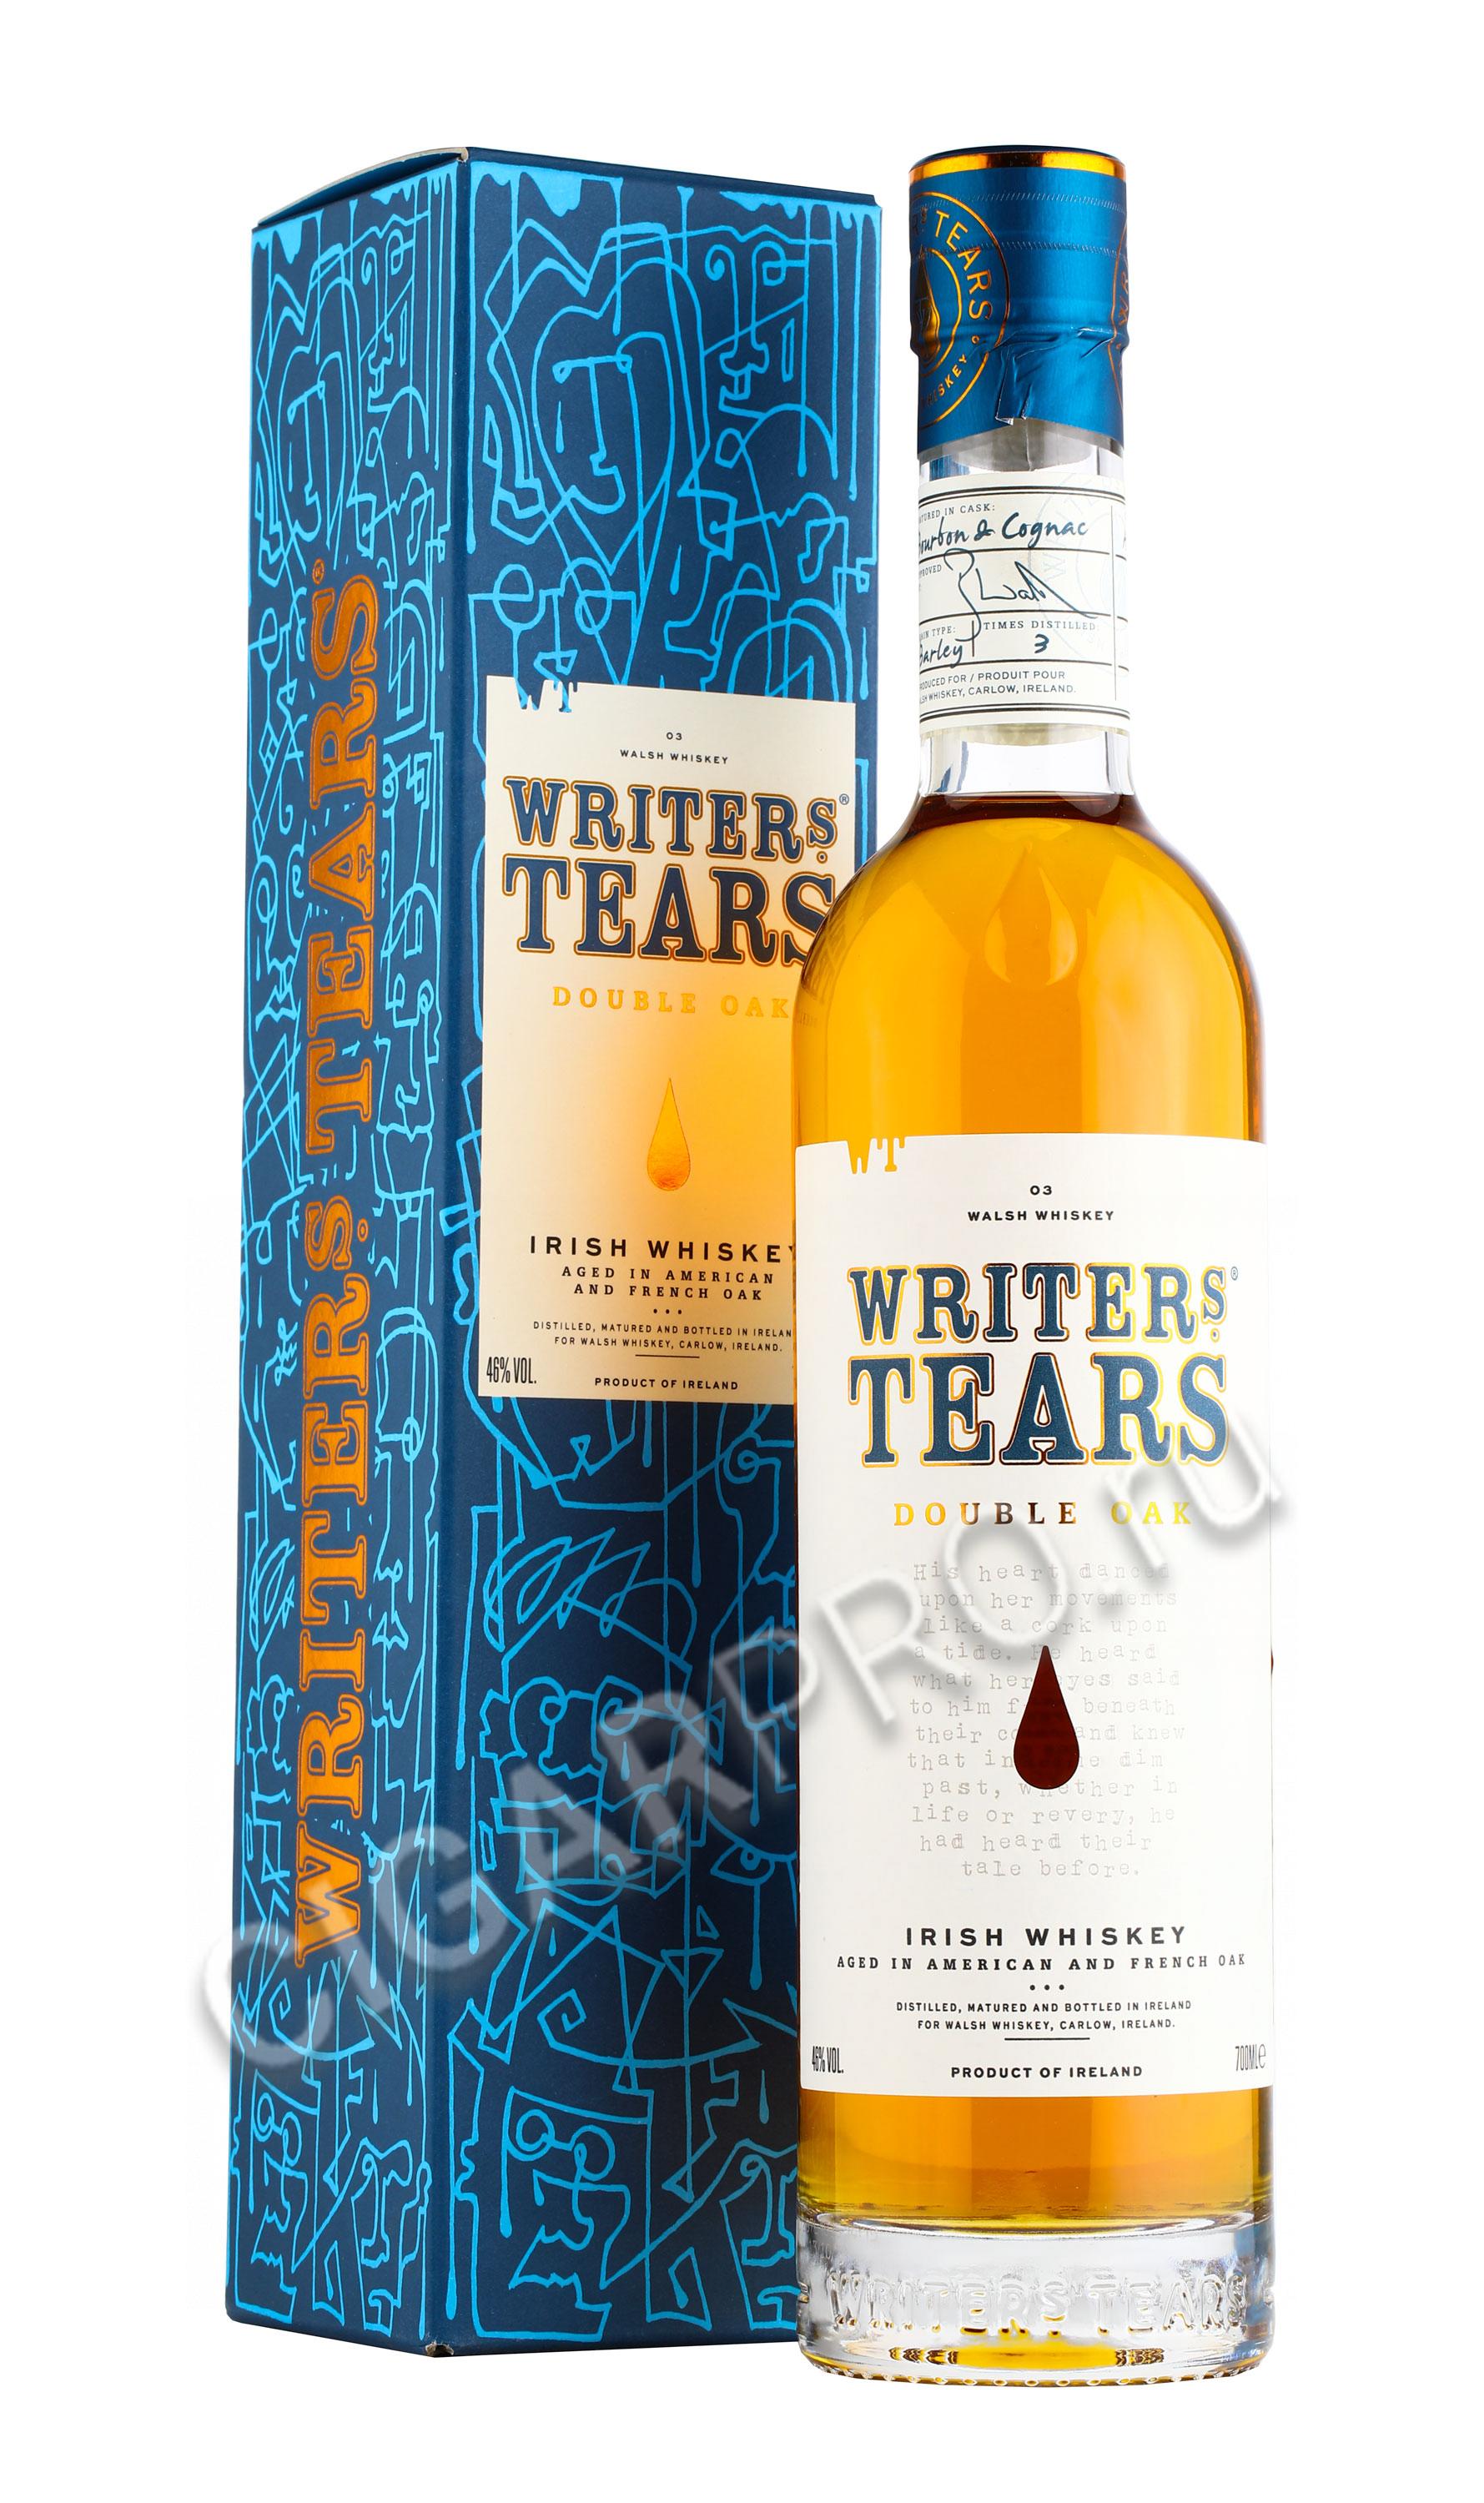 Writers tears 0.7. Writers tears виски. Writers’ tears Double Oak. Виски Райтерз ТИРЗ Коппер пот 0,7л. Writers tears виски 2016г.